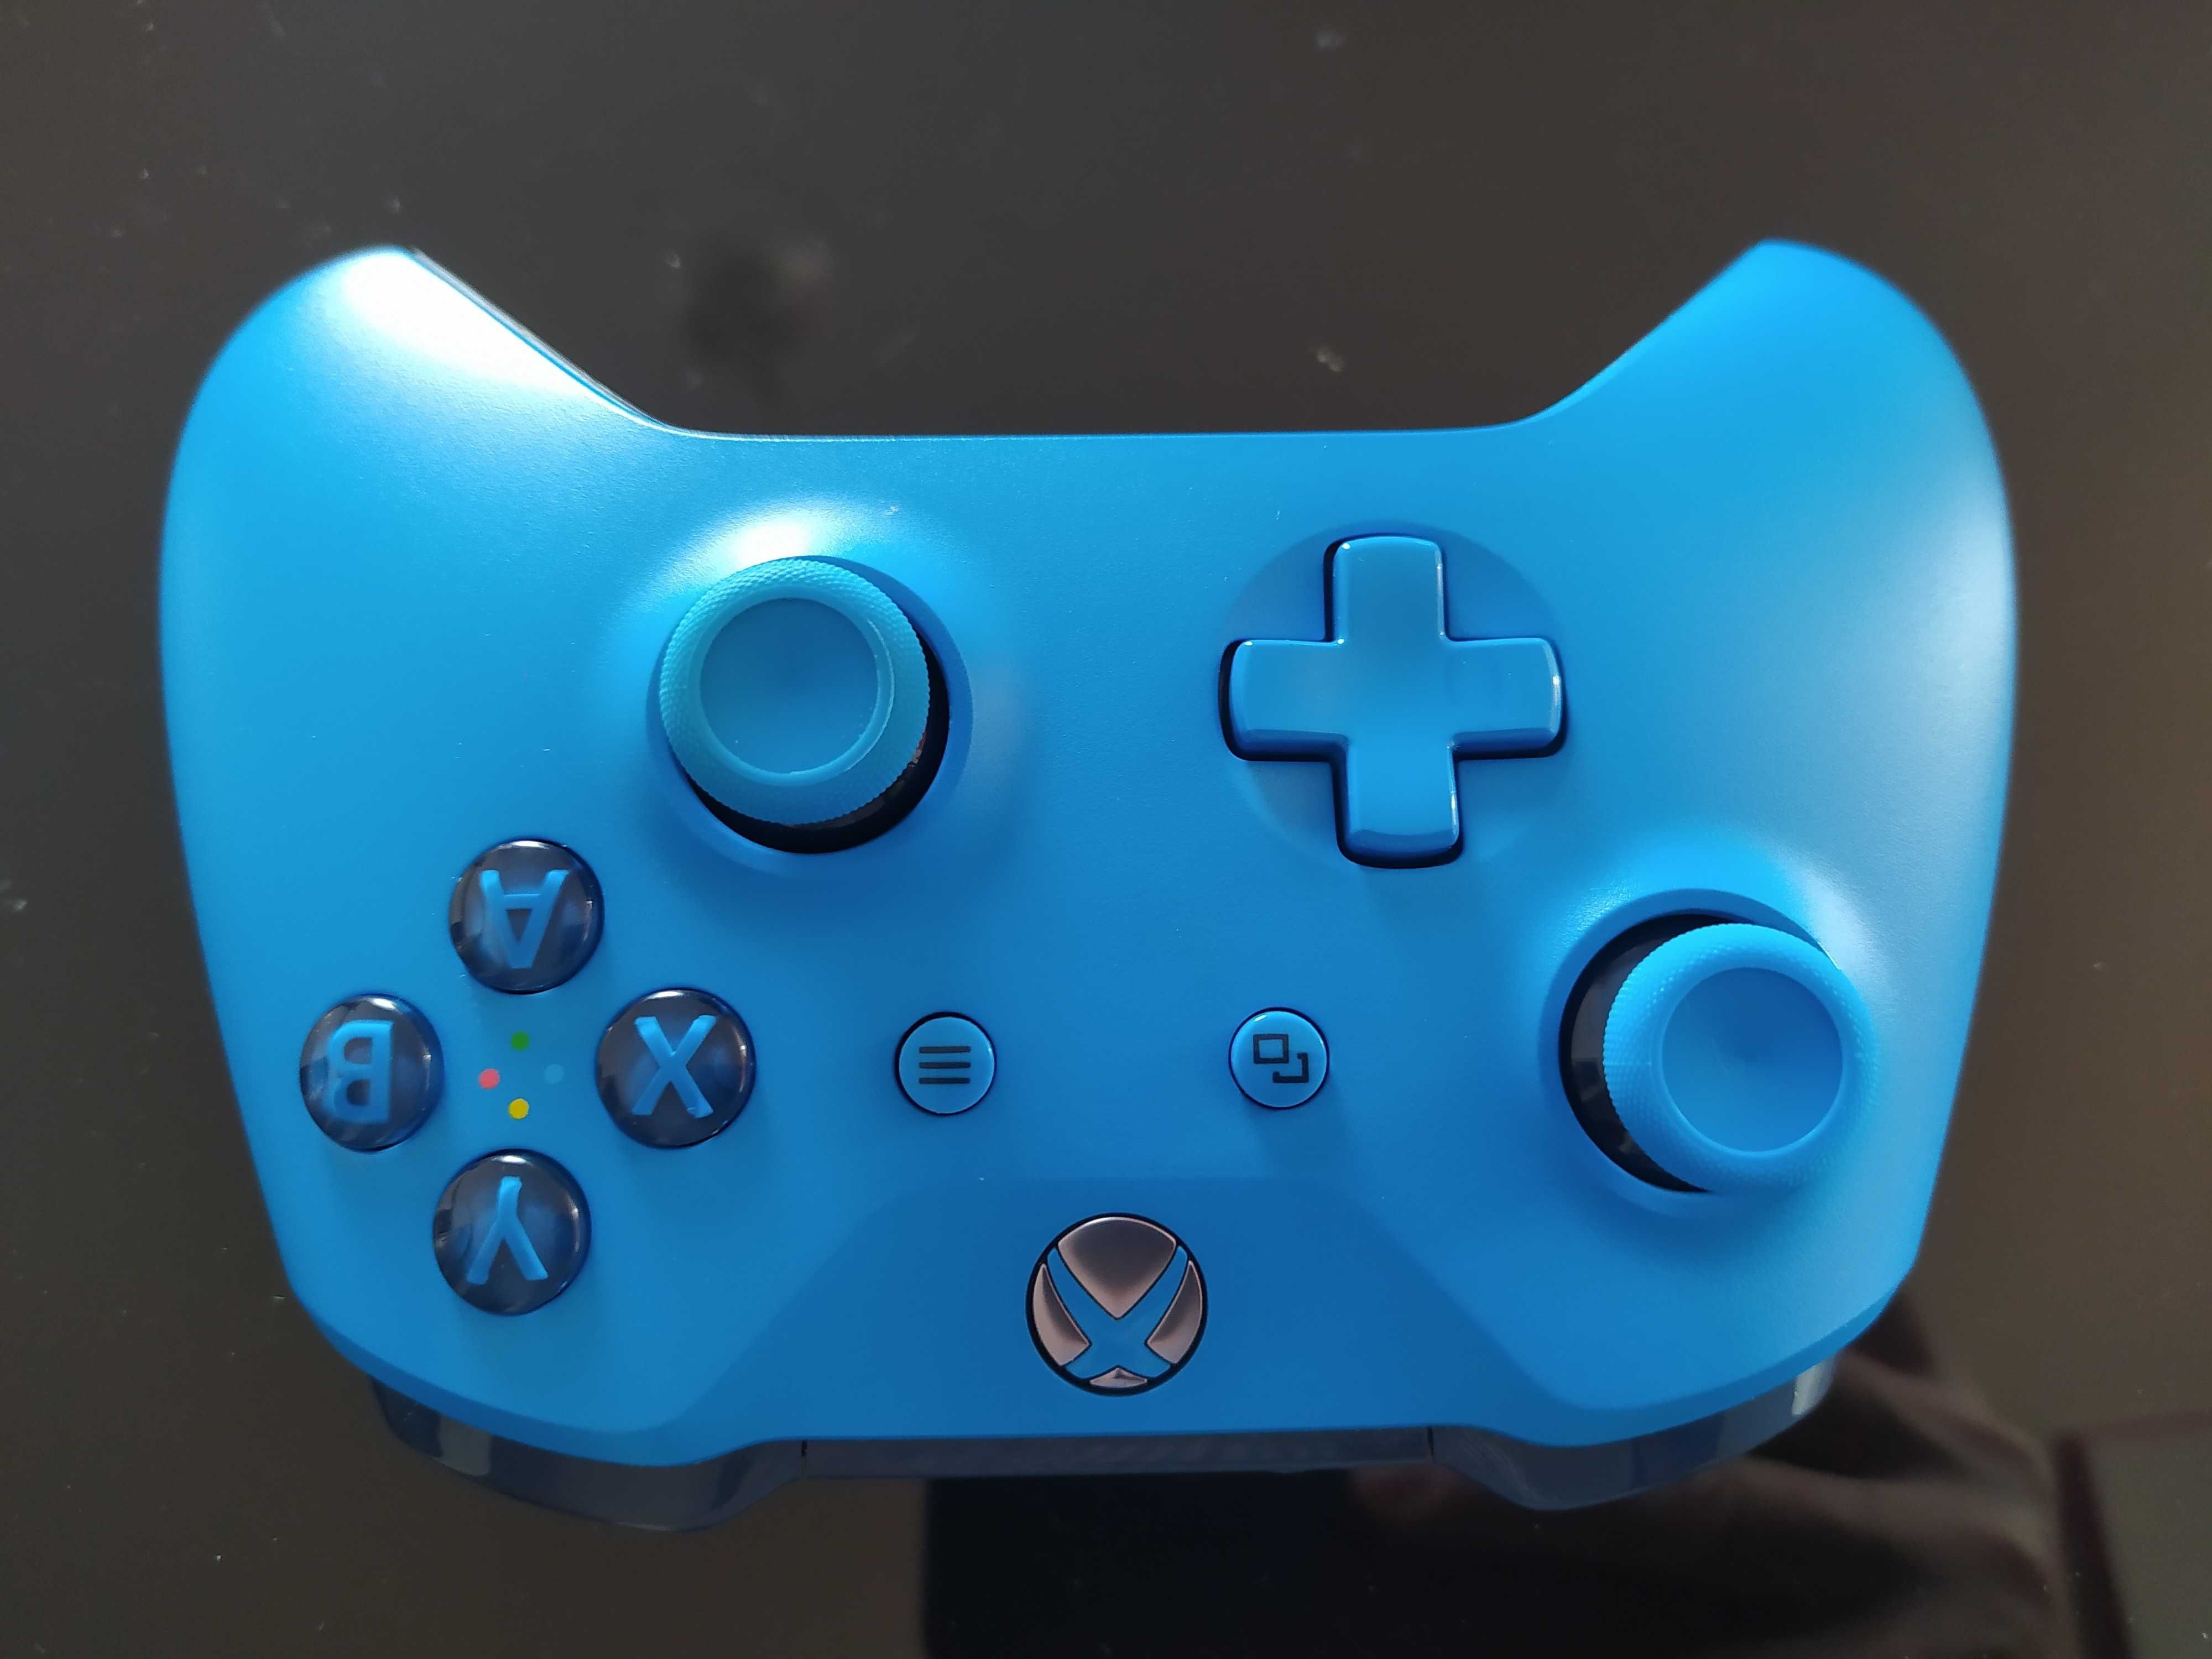 Pad kontroler PC Xbox one series niebieski idealny jak nowy